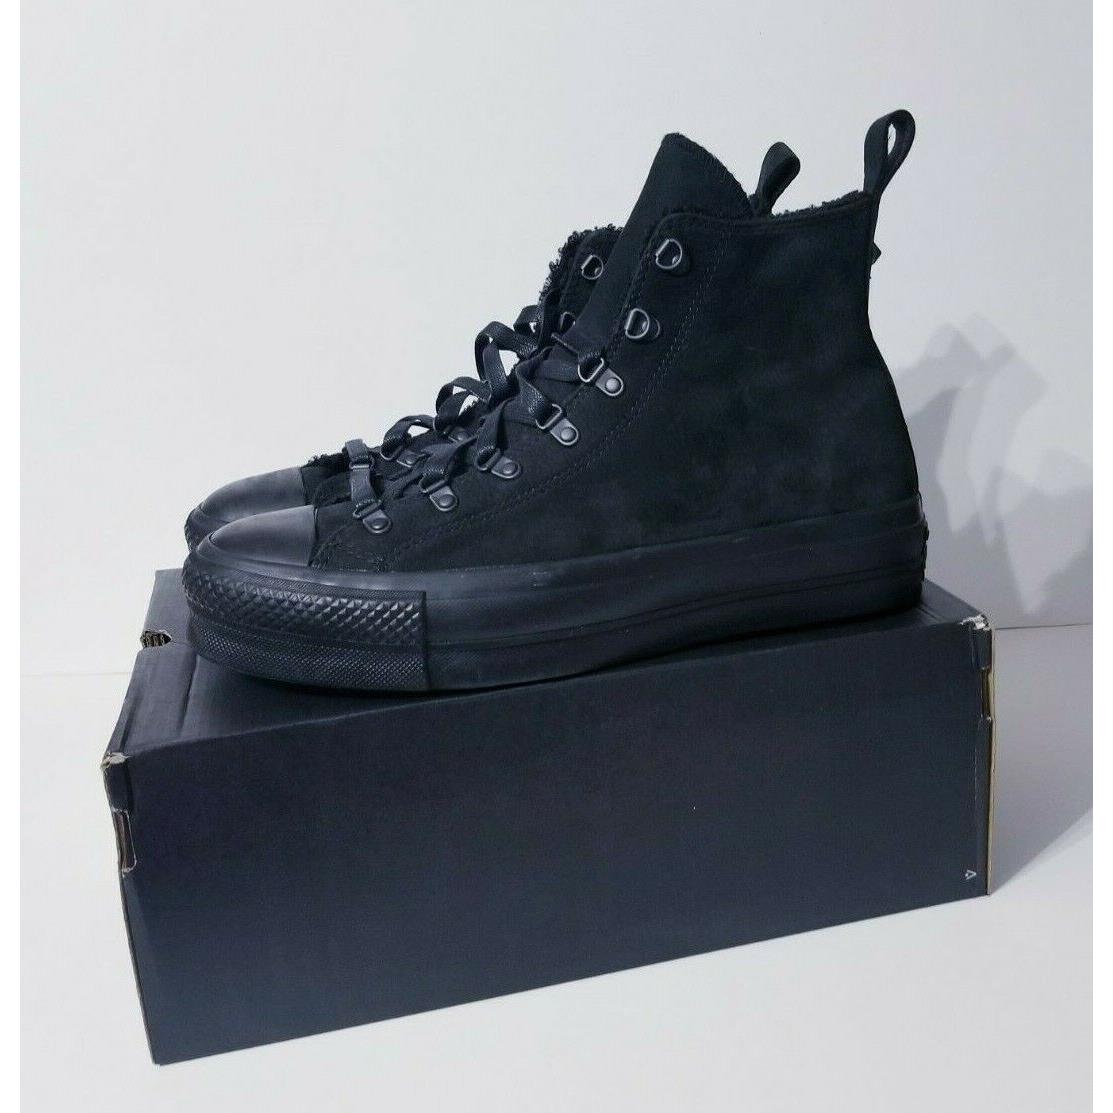 Converse Chuck Taylor All Star Black Platform Shoes 173097C Men`s Women`s Size